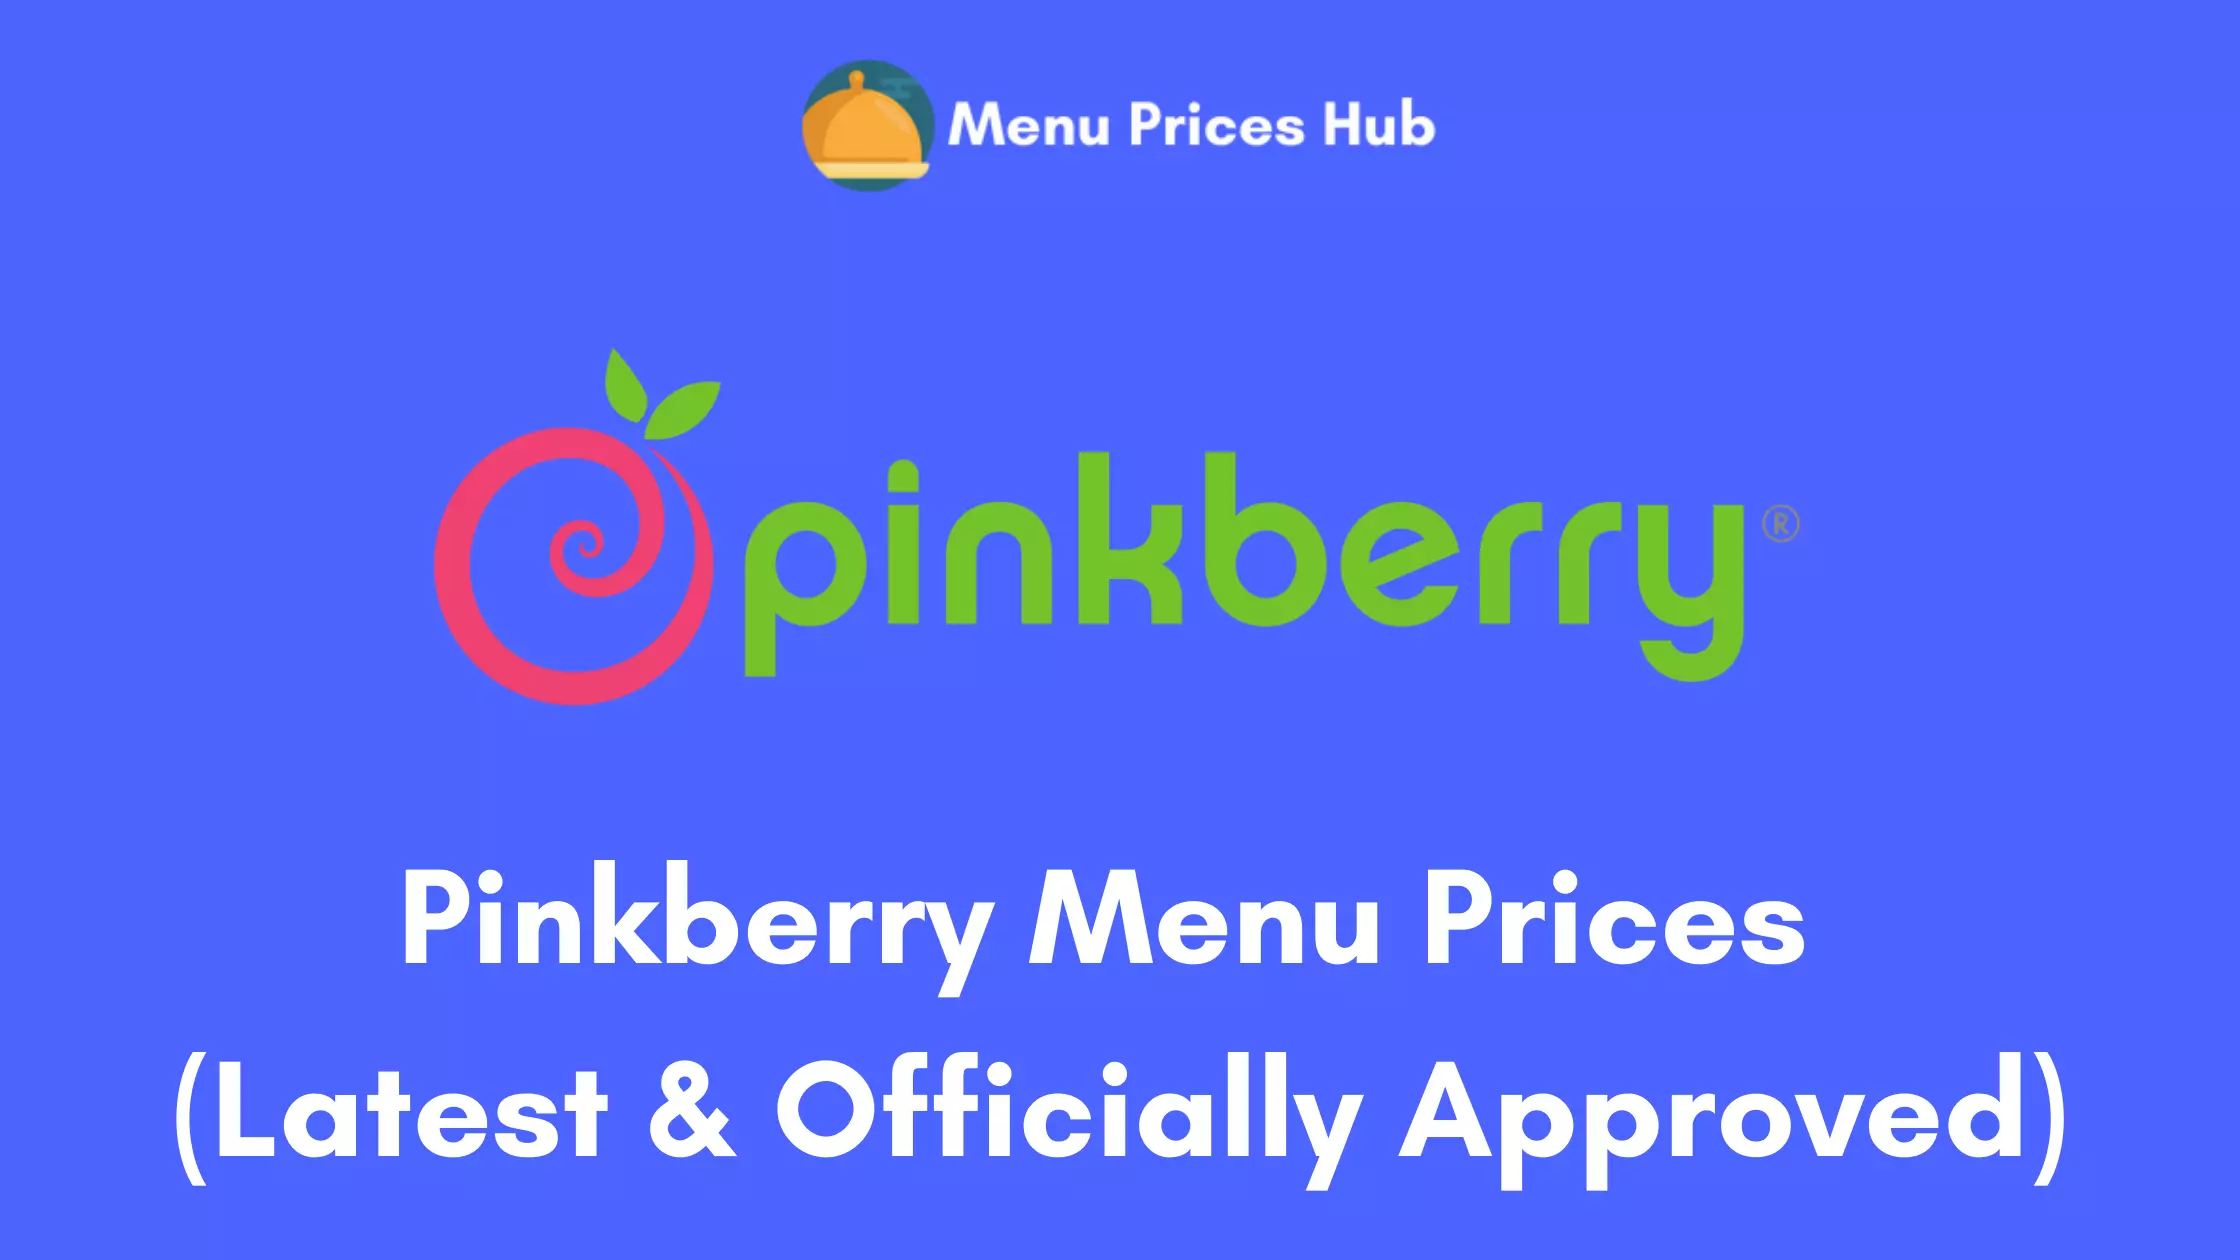 Pinkberry Menu Prices